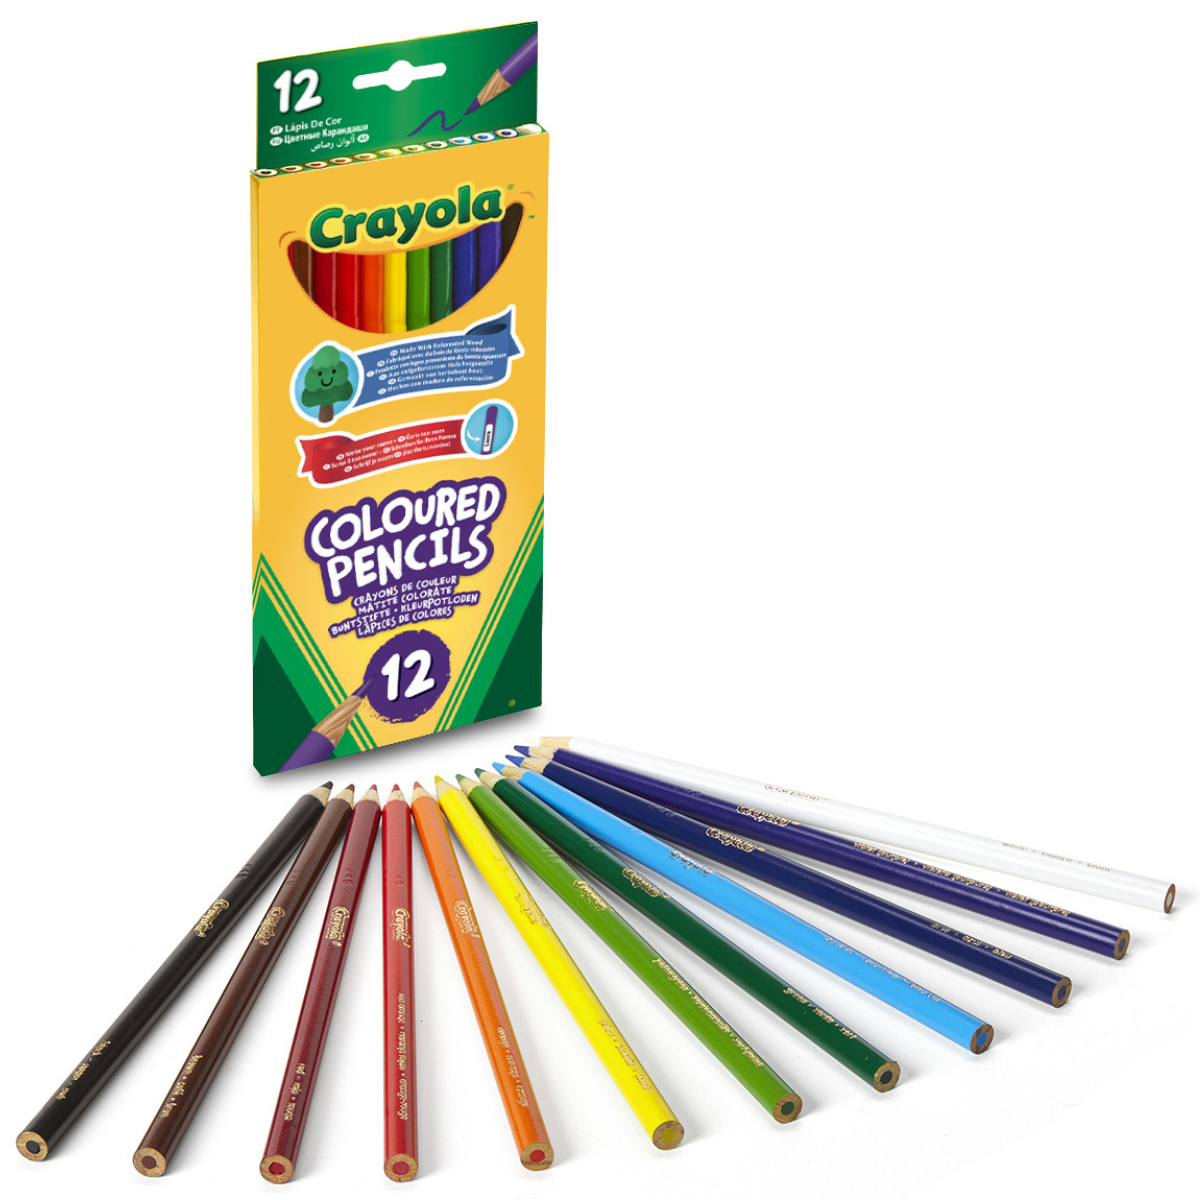 Crayola - scatola da 12 matite colorate di legno fsc - pastelli colorati con mina resistente - CRAYOLA